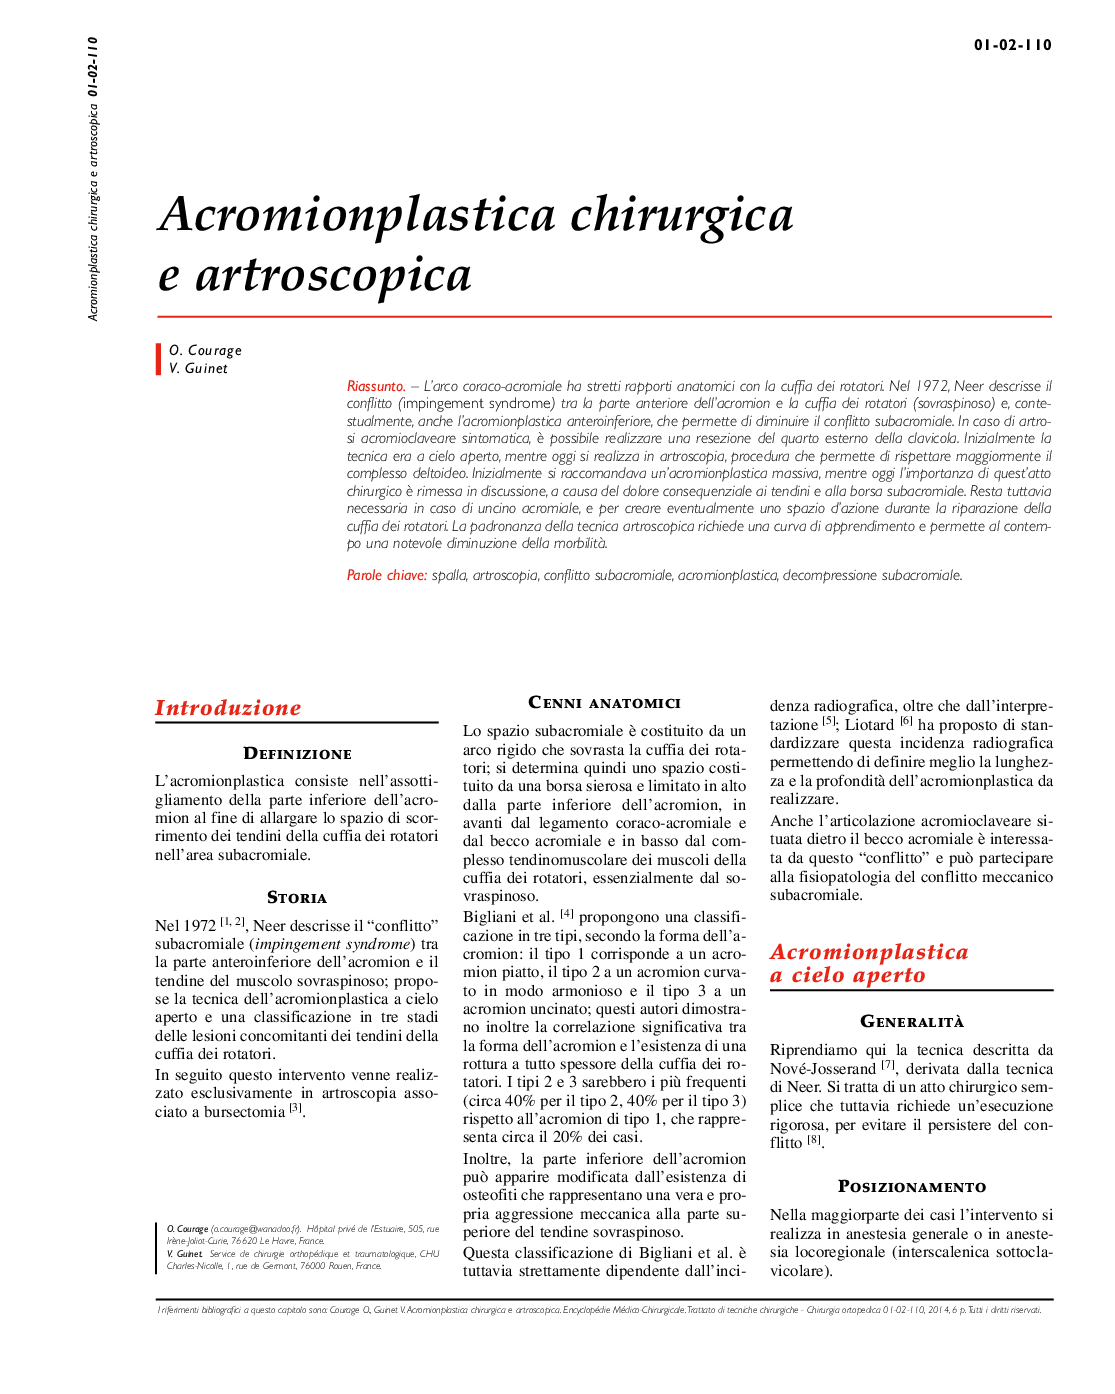 Acromionplastica chirurgica e artroscopica